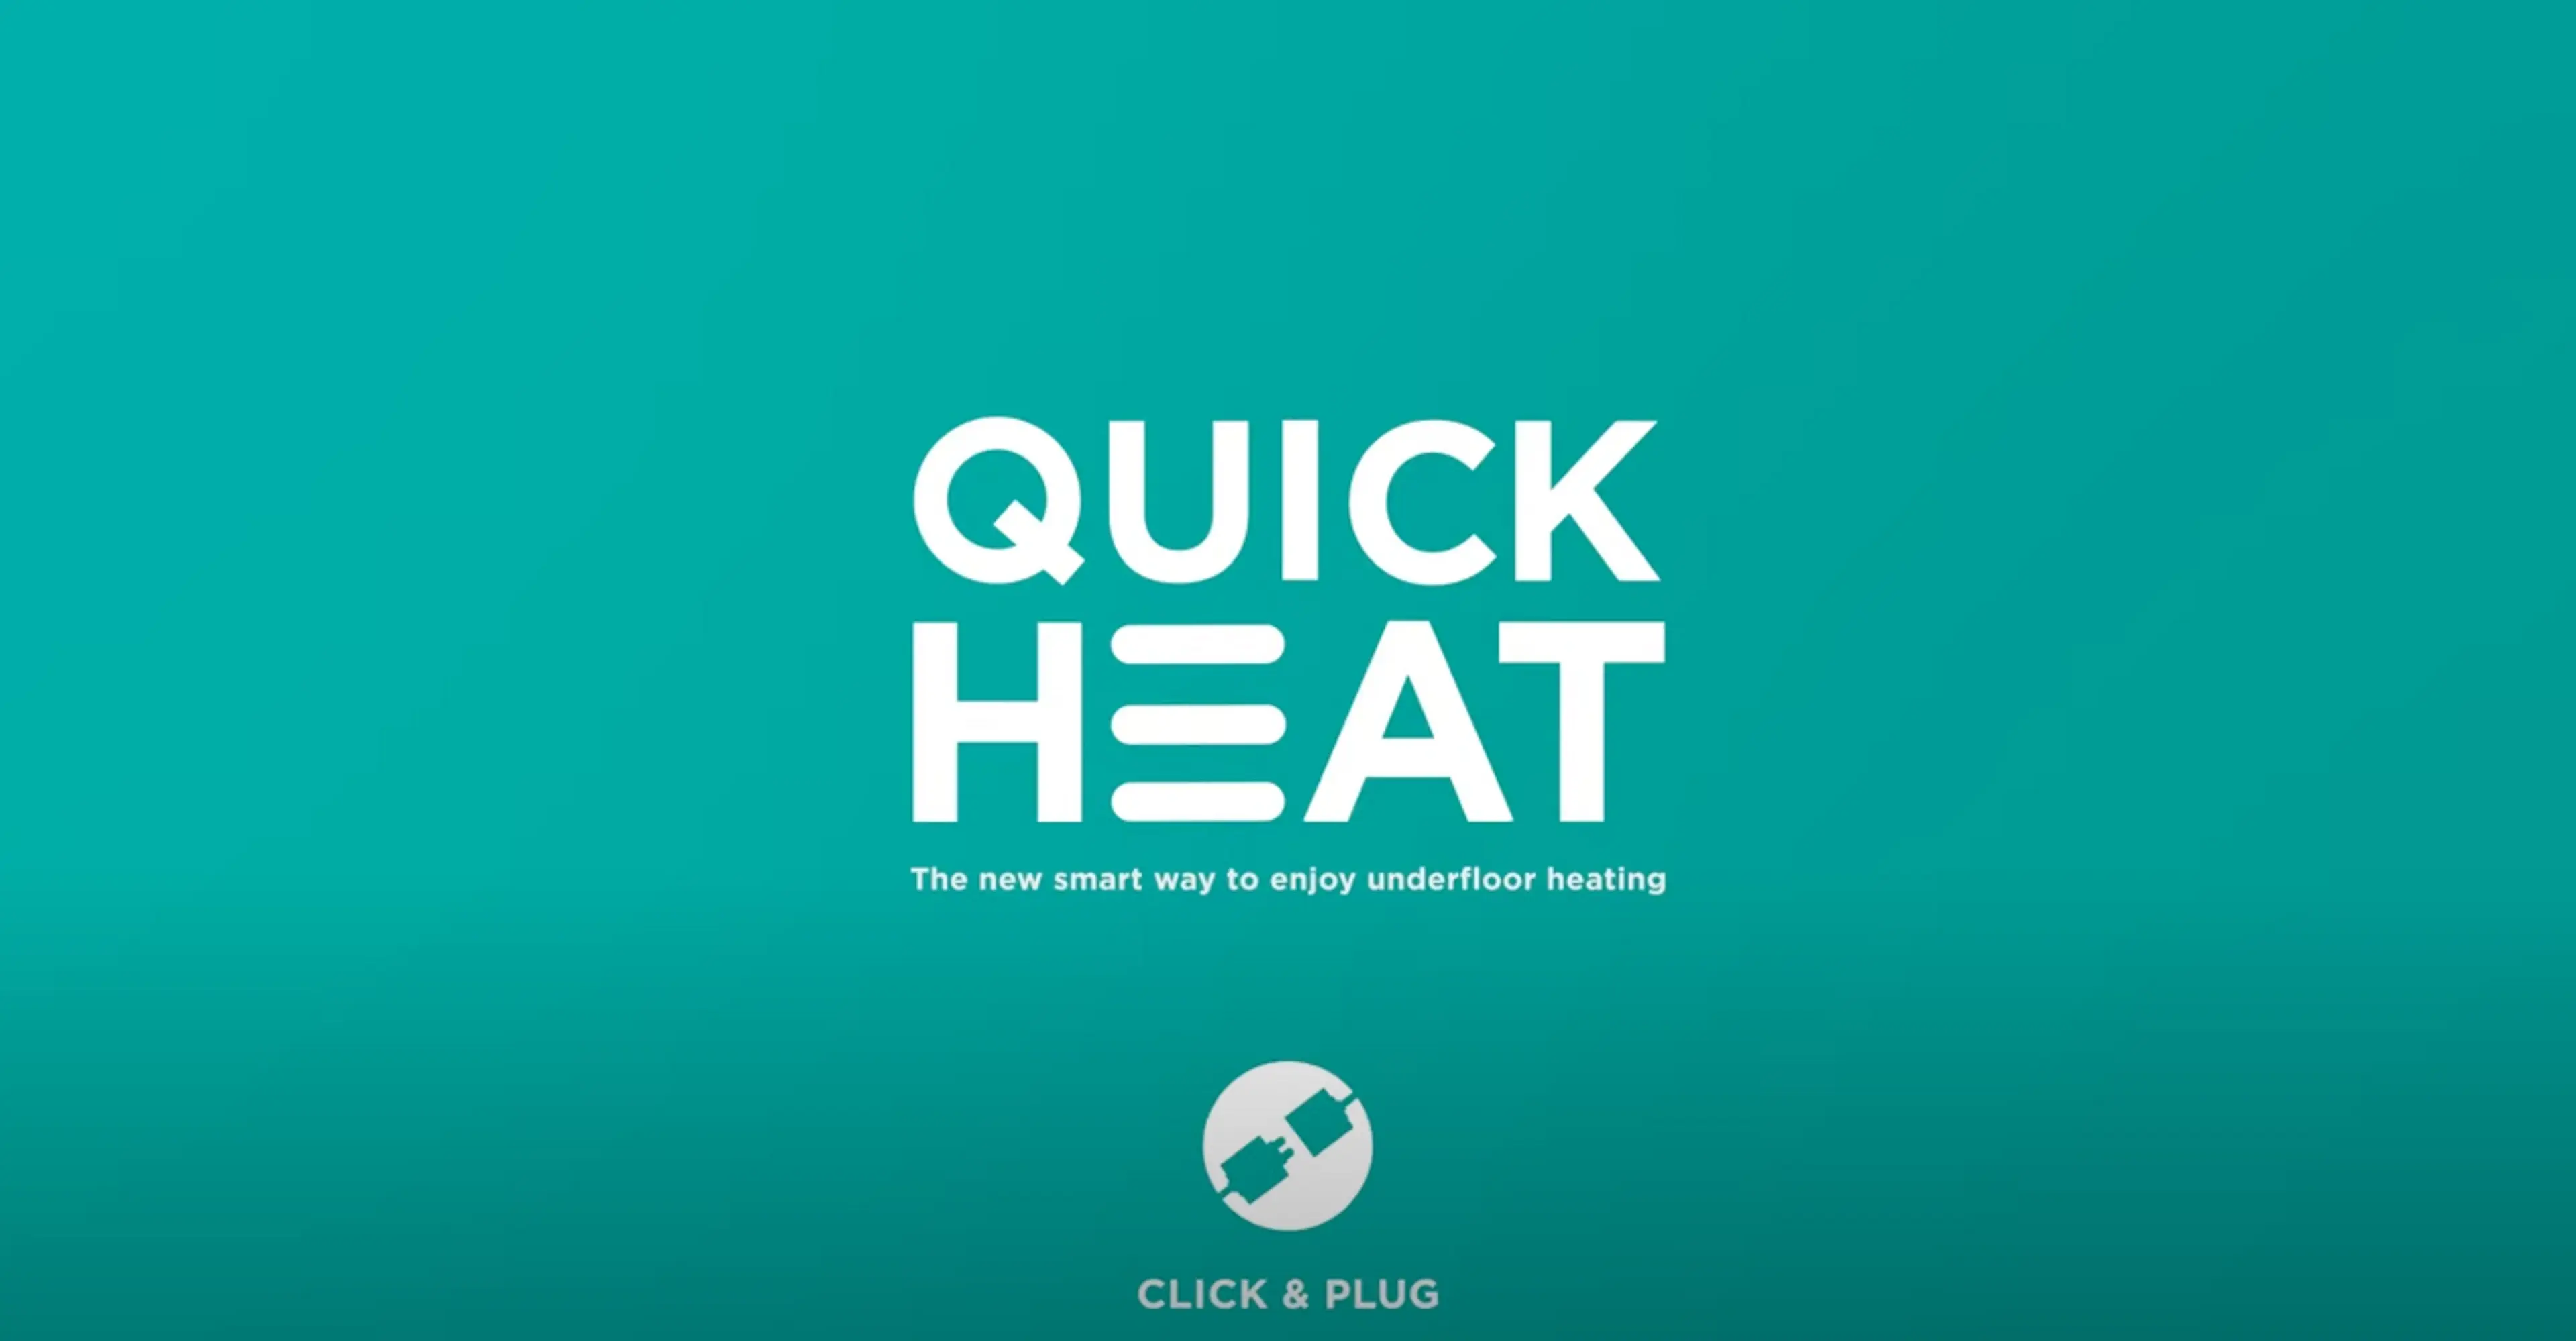 Forsidebilde til video om installering av QuickHeat gulvvarme fra Pergo.